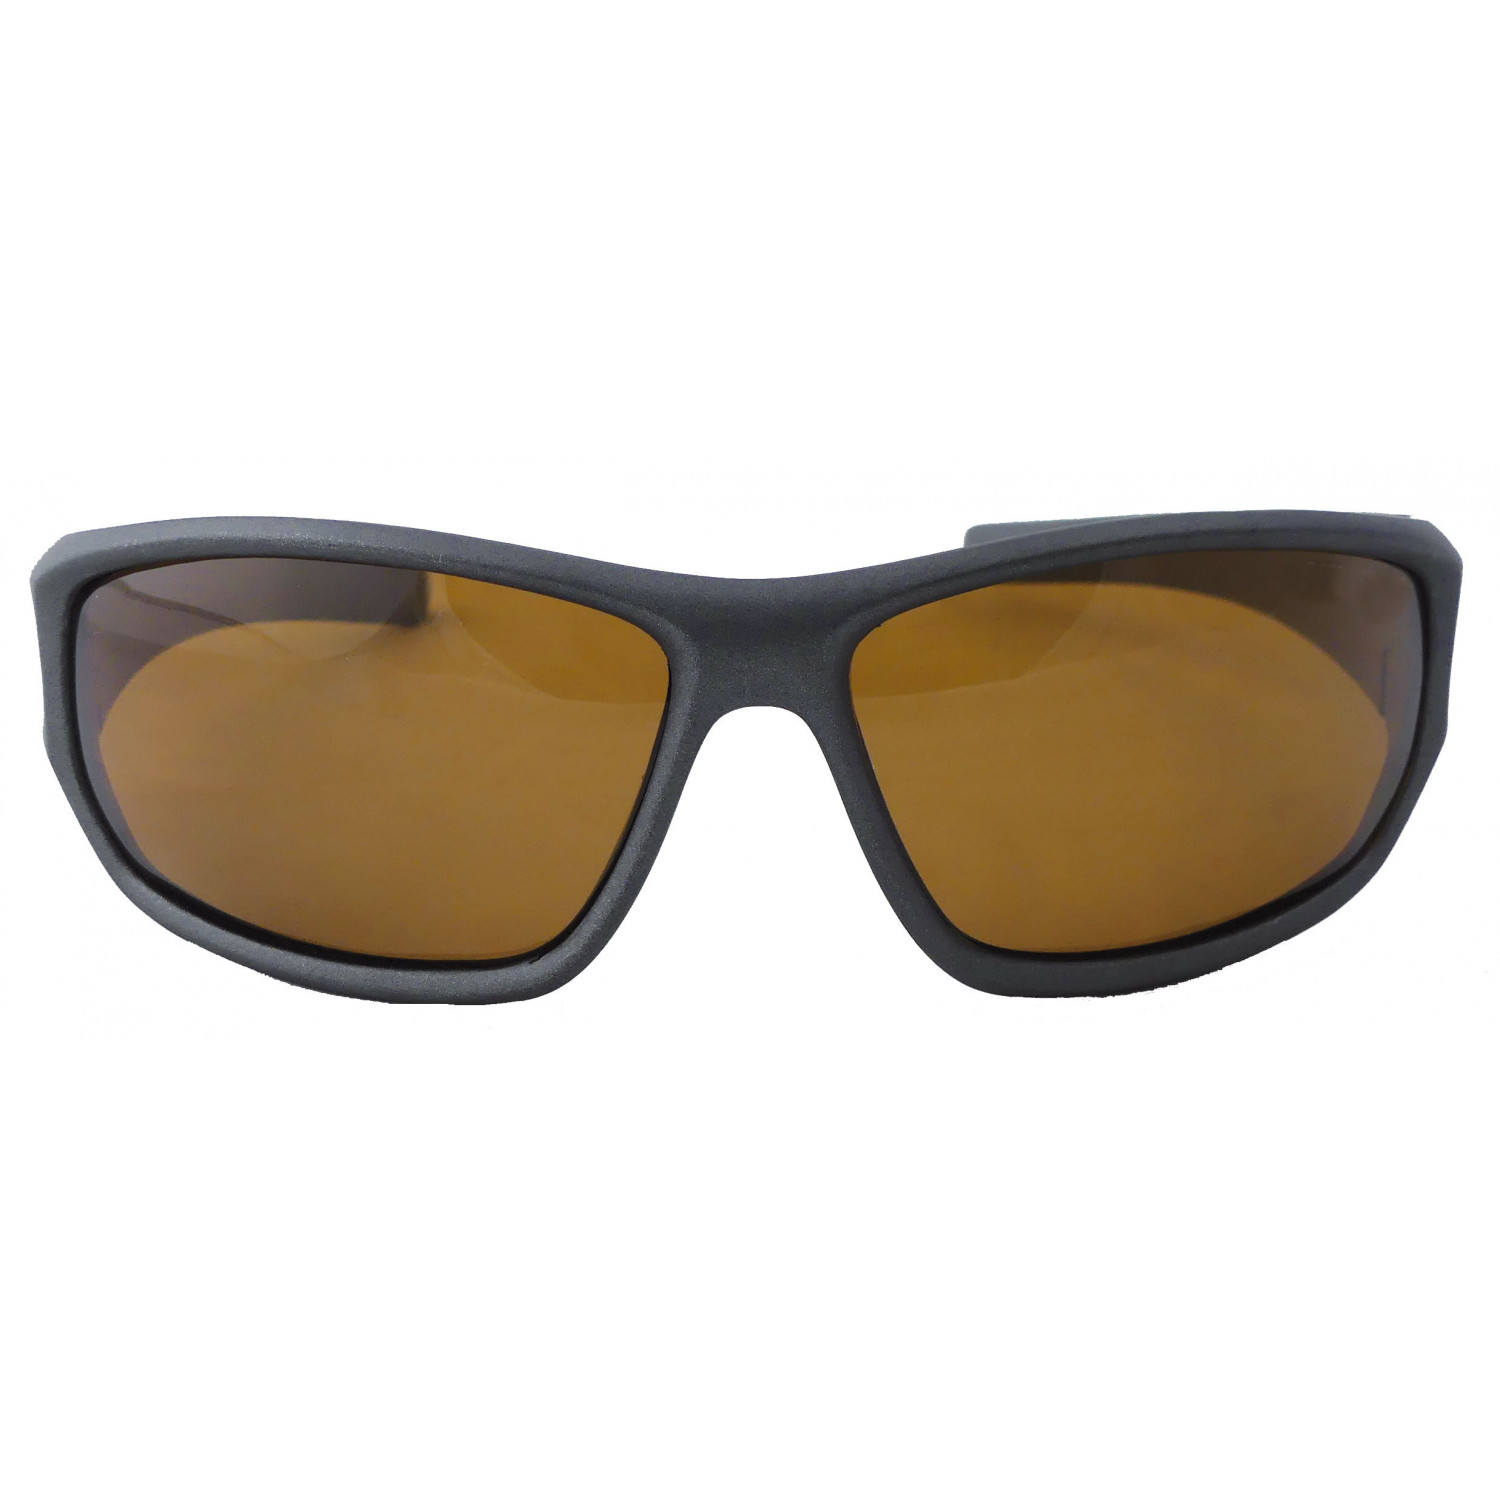 Suxxes Polarisationsbrille schwarz mit Gläsern braunen